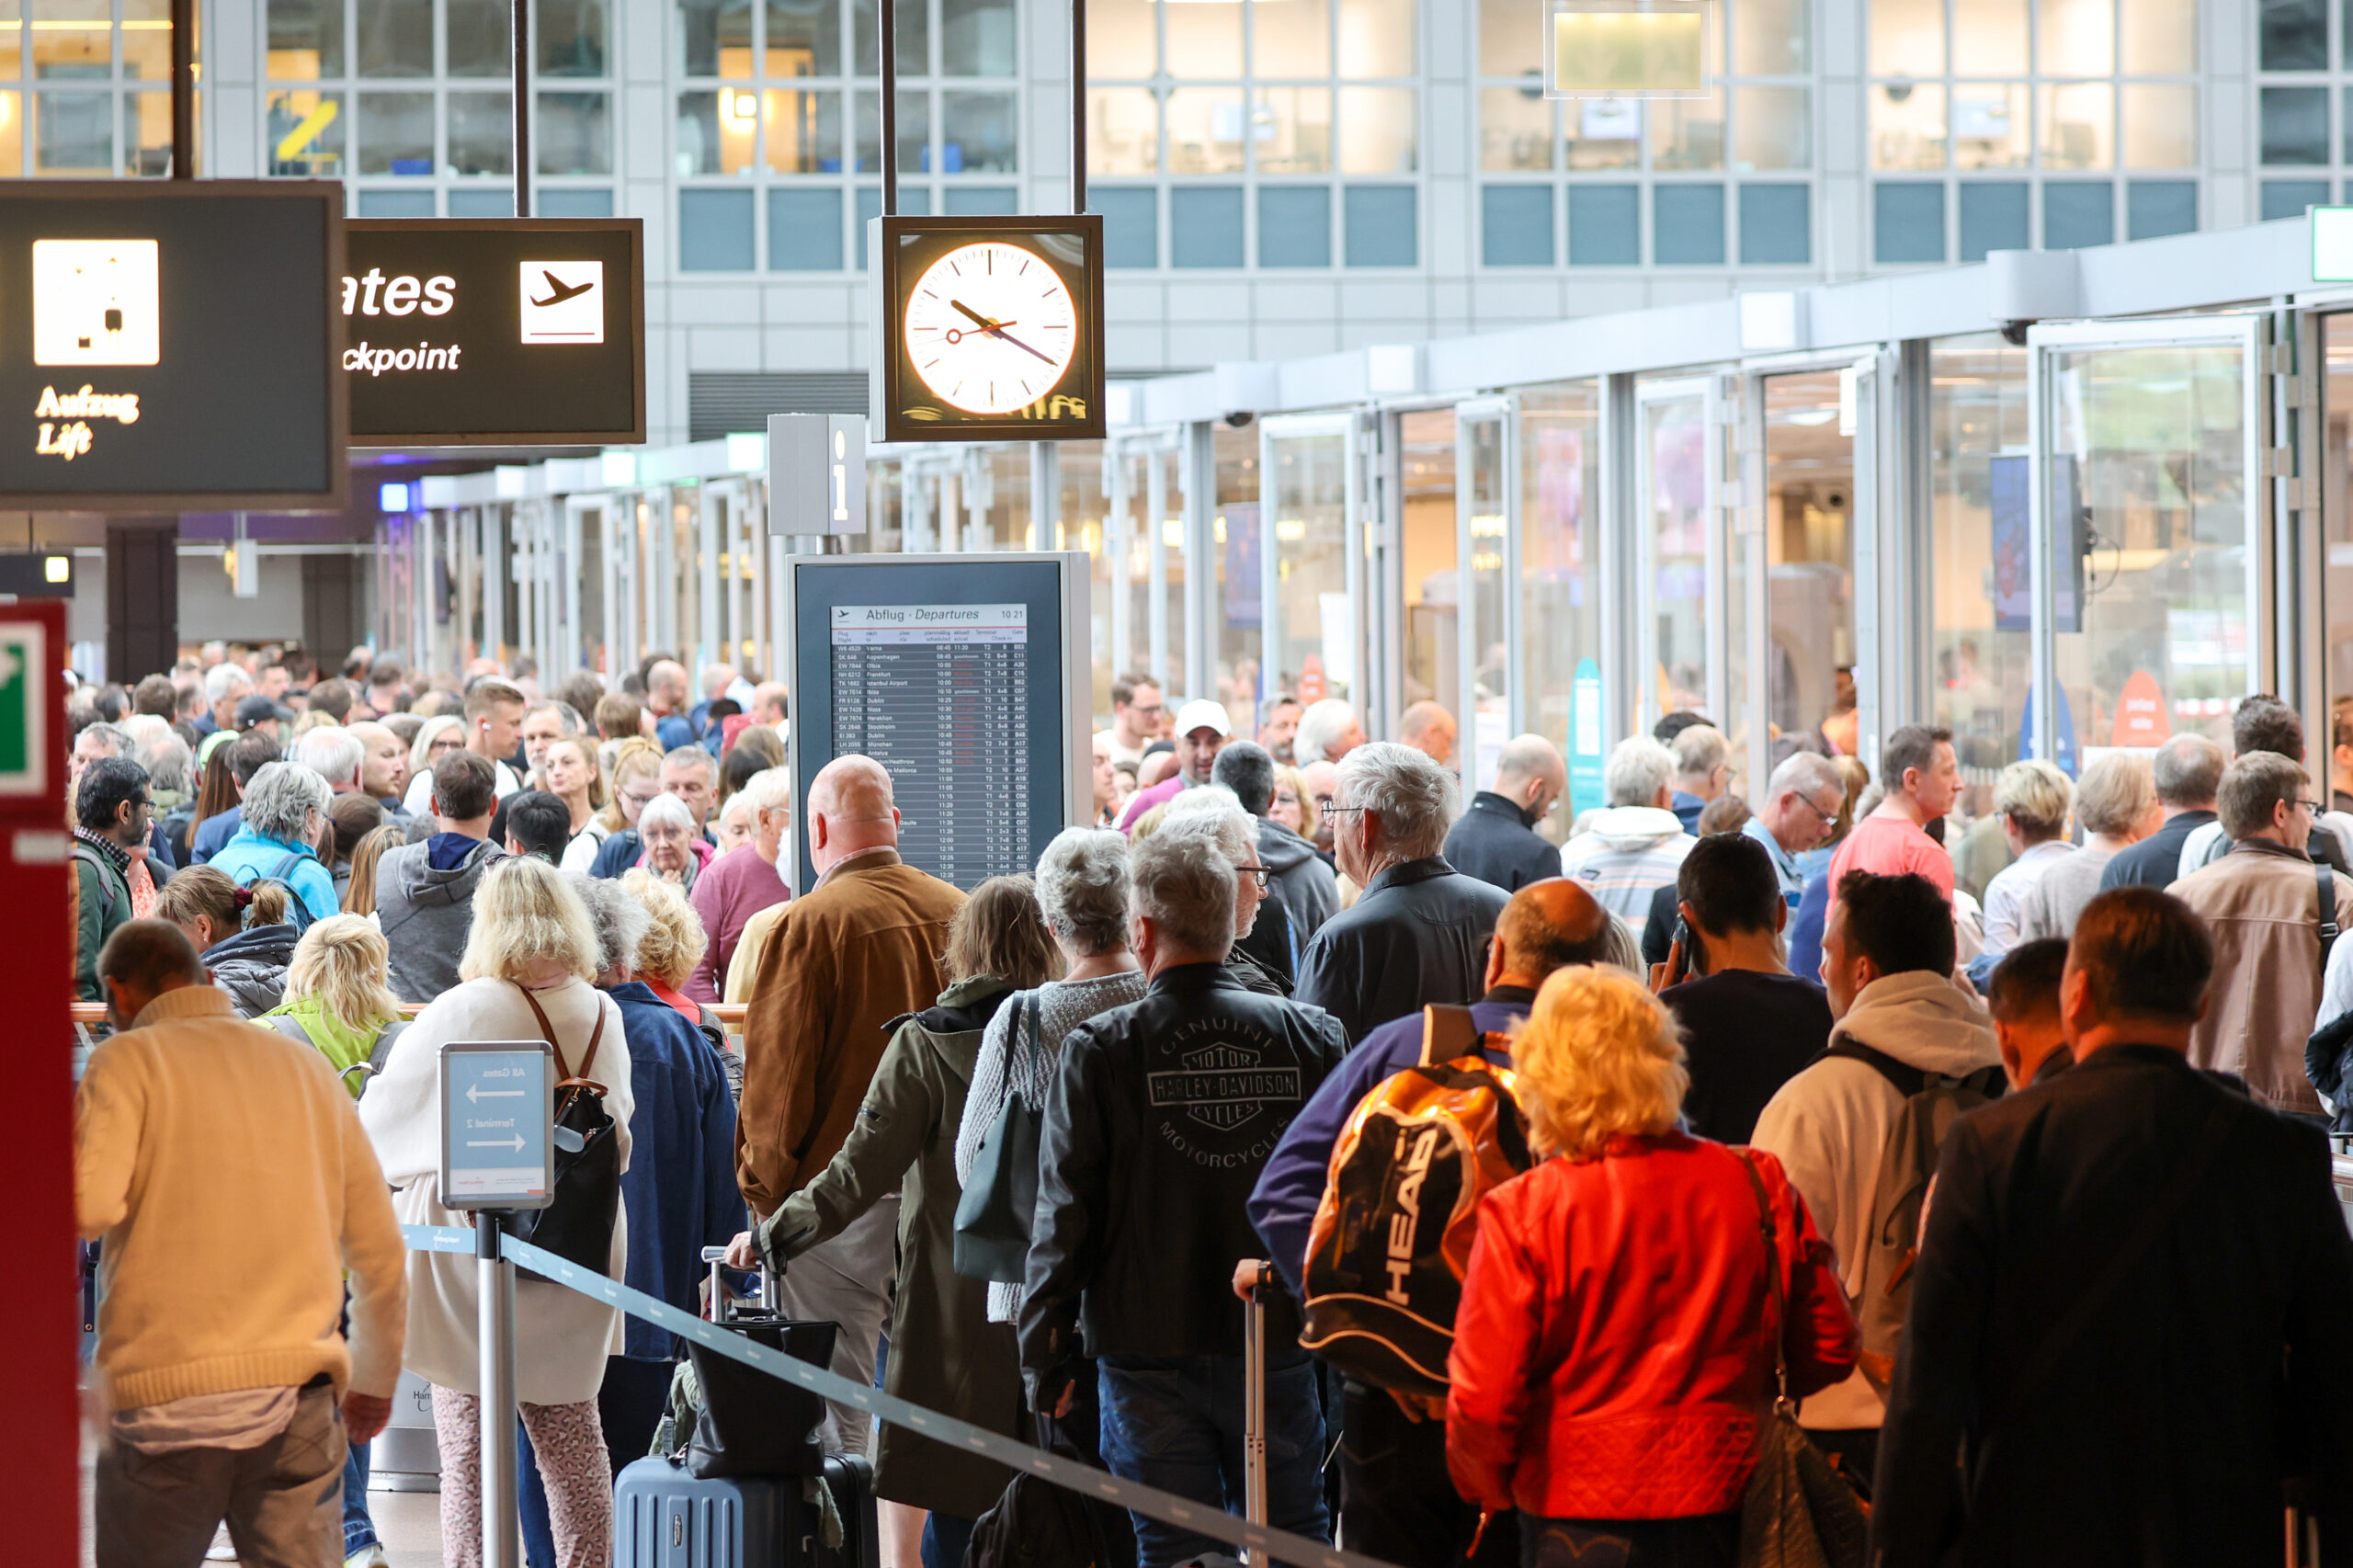 Reisende warten in langen Schlangen vor der Sicherheitskontrolle am Flughafen Hamburg auf die Abfertigung.